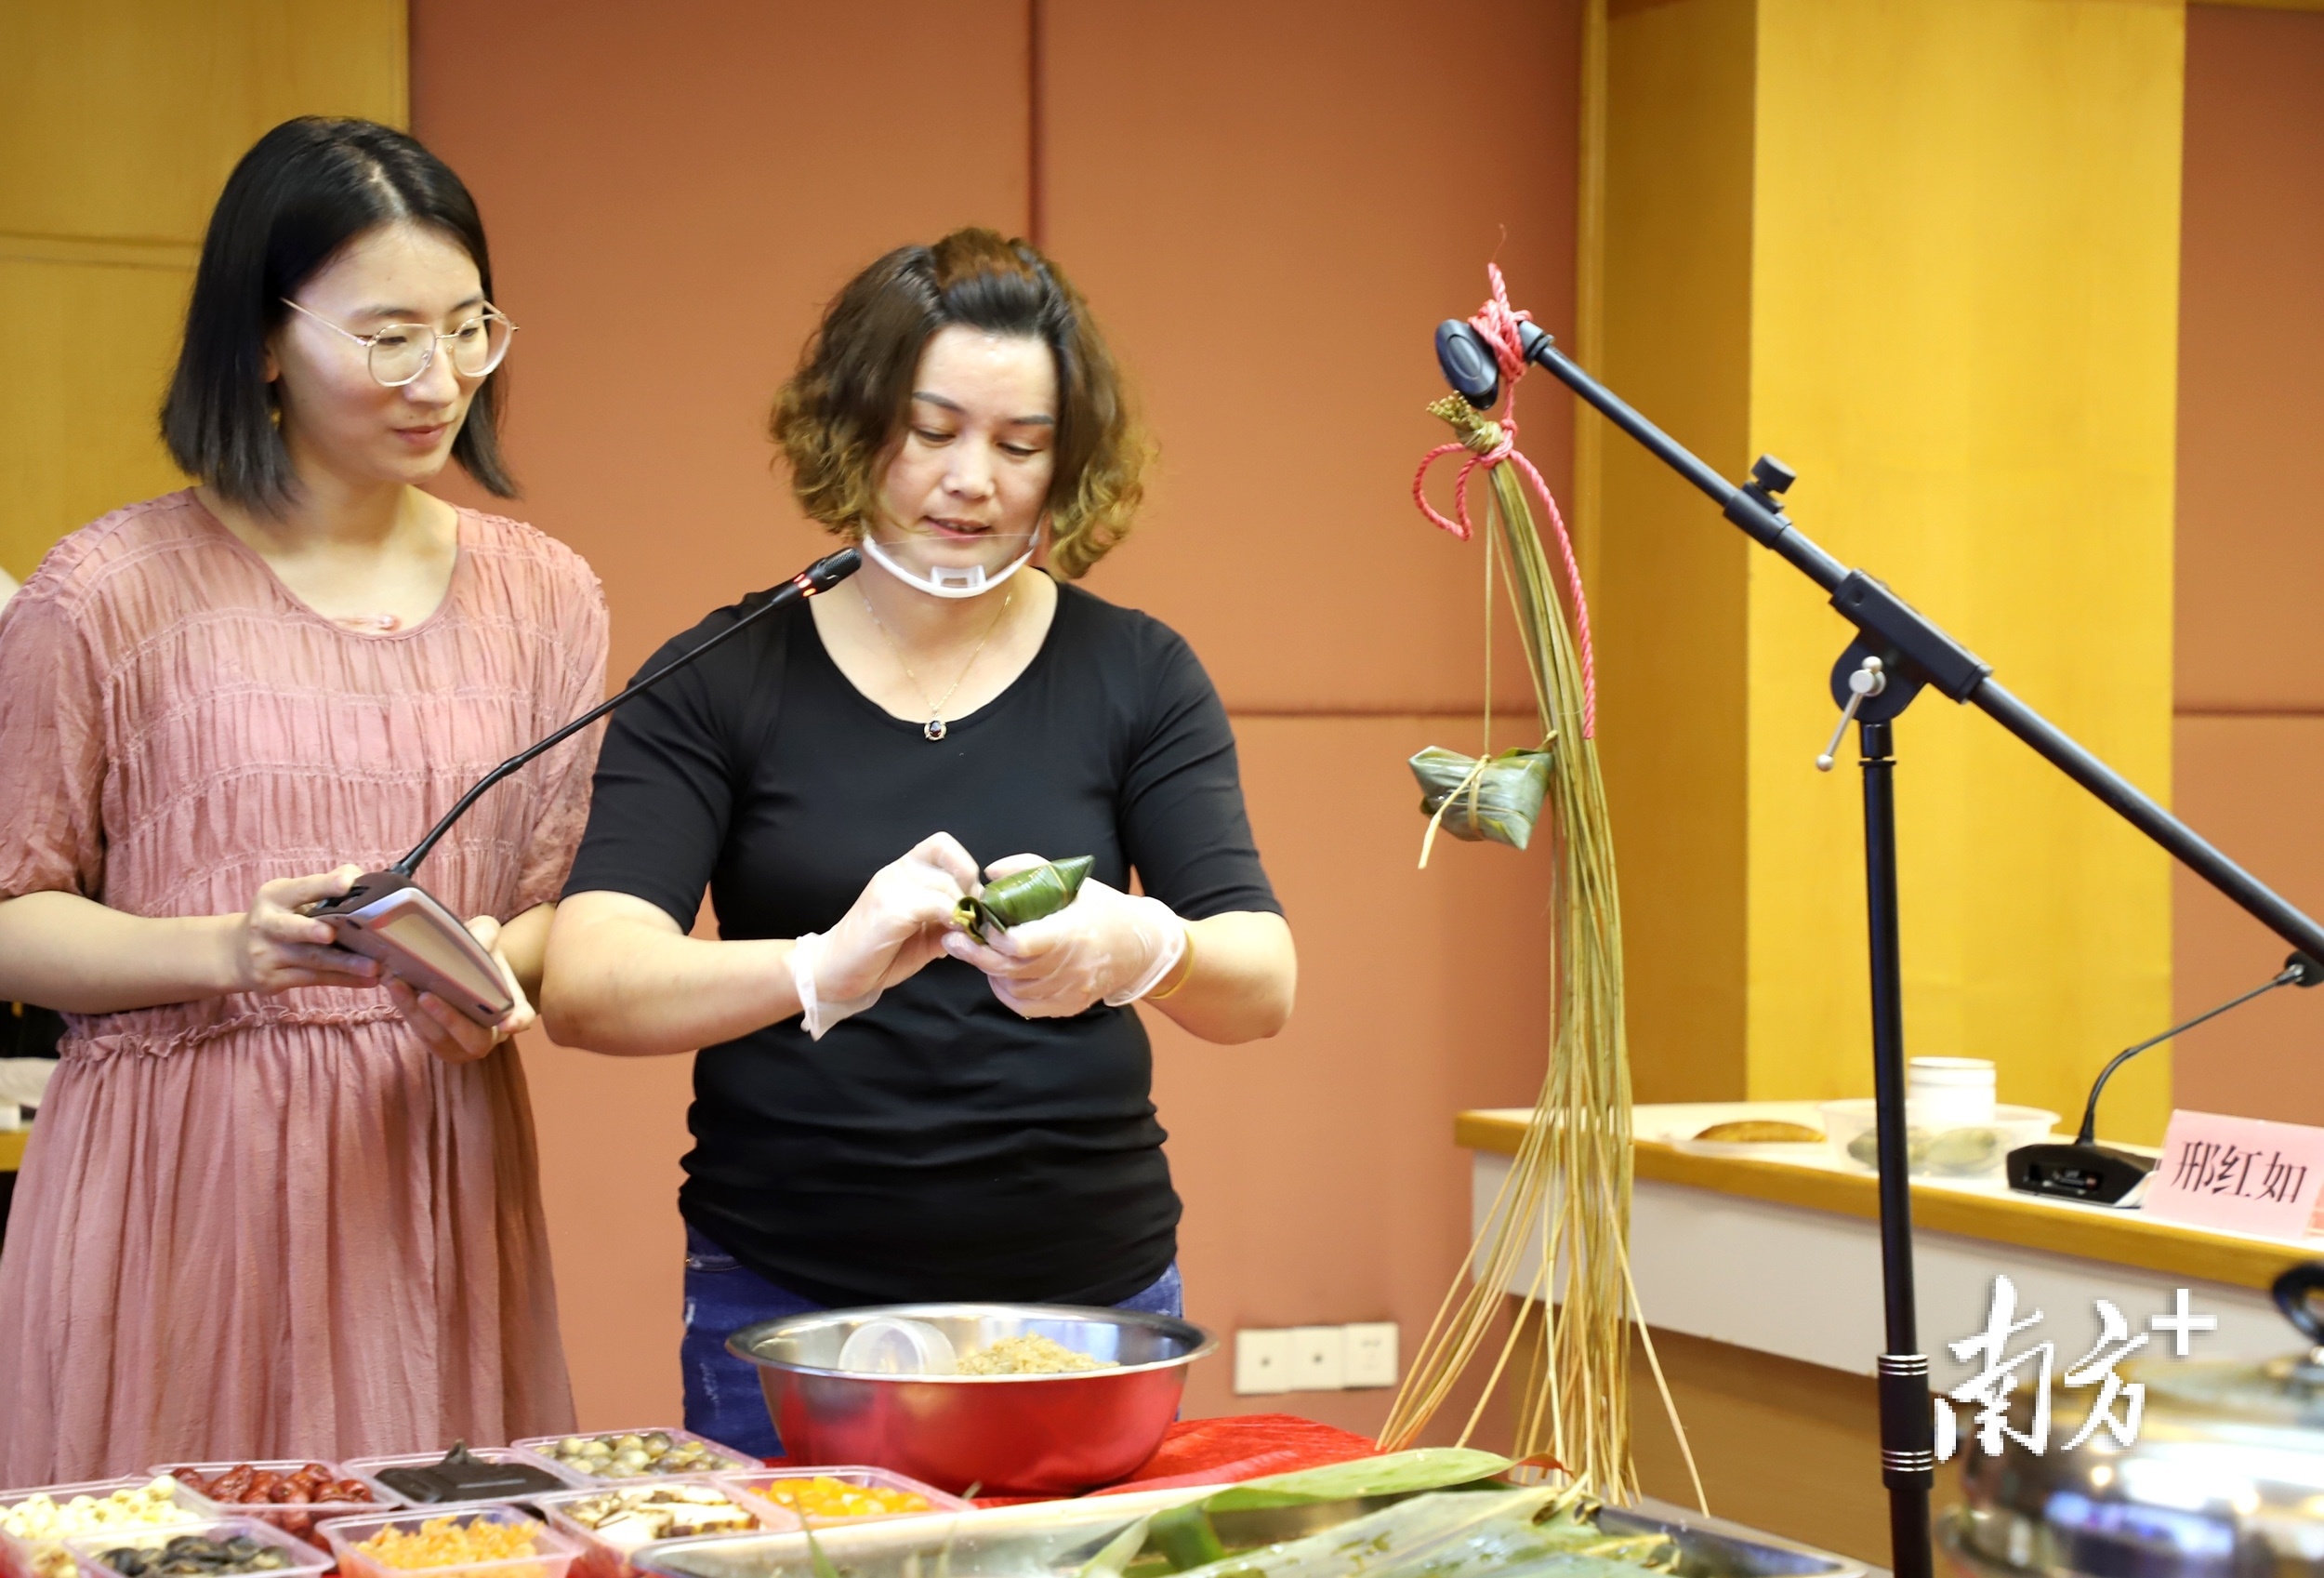 潮安区会场为侨亲们展示和介绍潮安传统双拼粽子的做法。 南方+ 纪金娜 拍摄